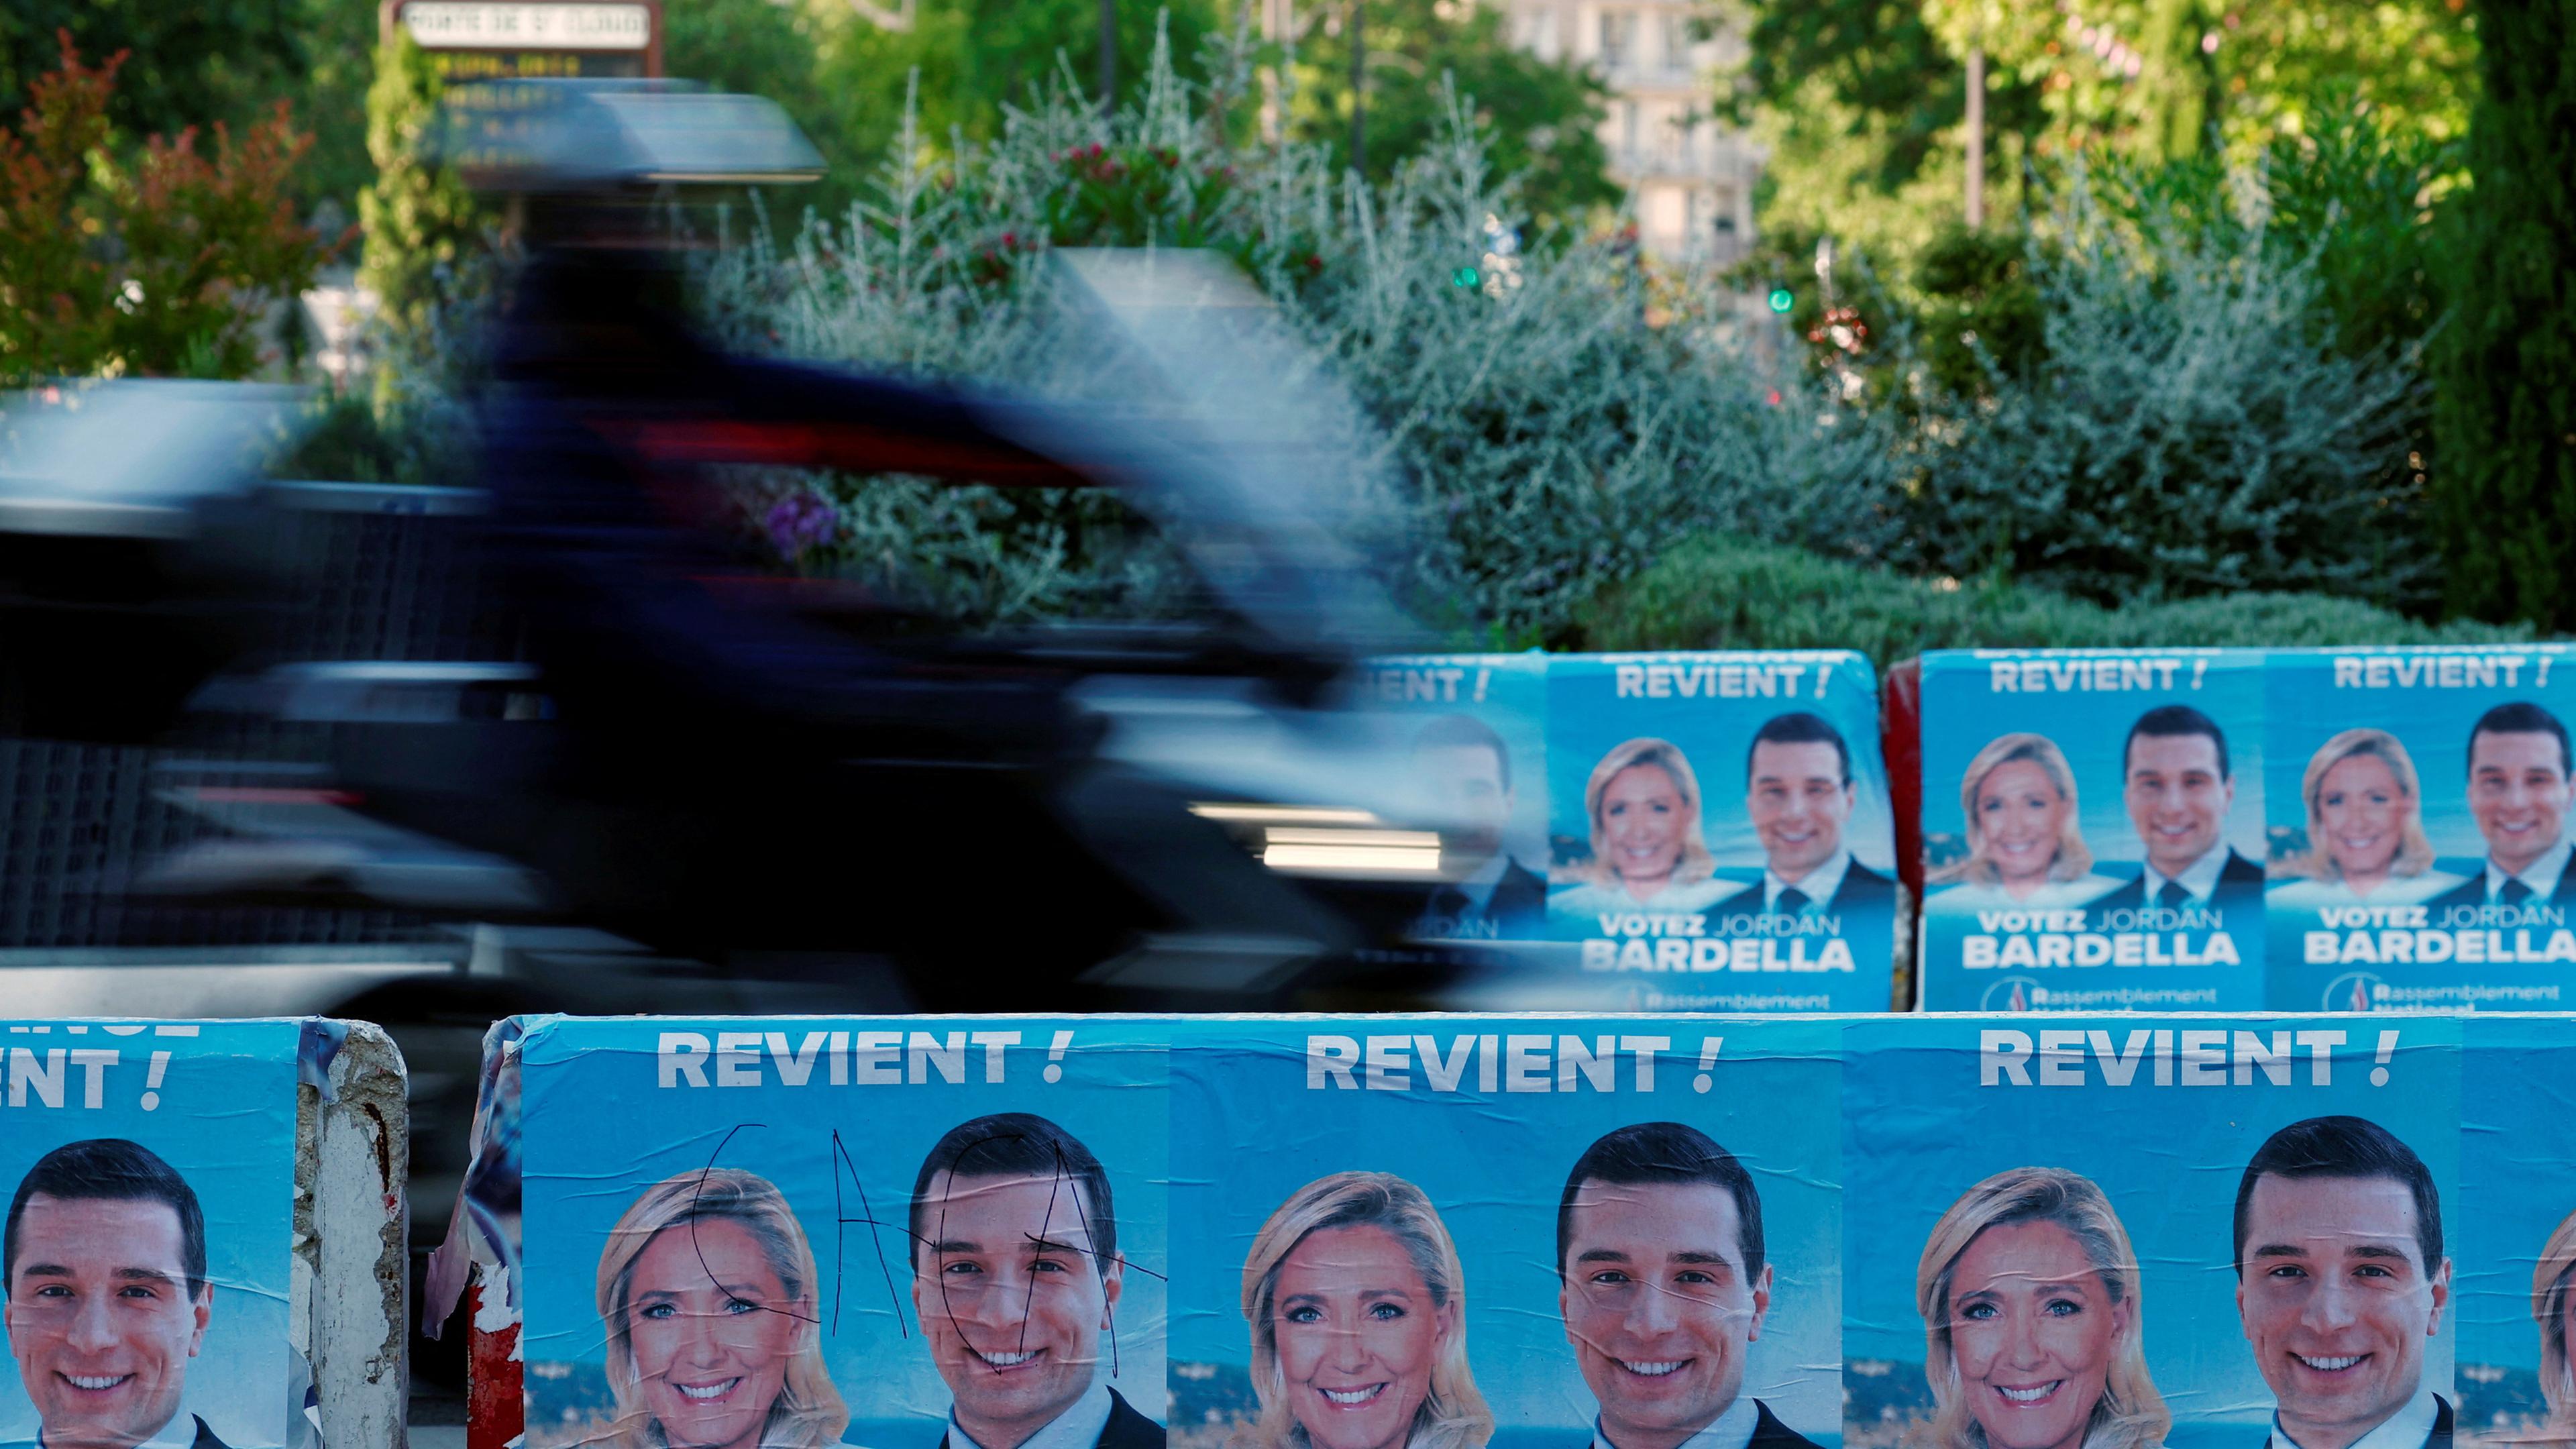 Europawahlplakate der französischen rechtsextremen Partei Rassemblement National mit Bildern ihrer Anführer Marine Le Pen und Jordan Bardella.